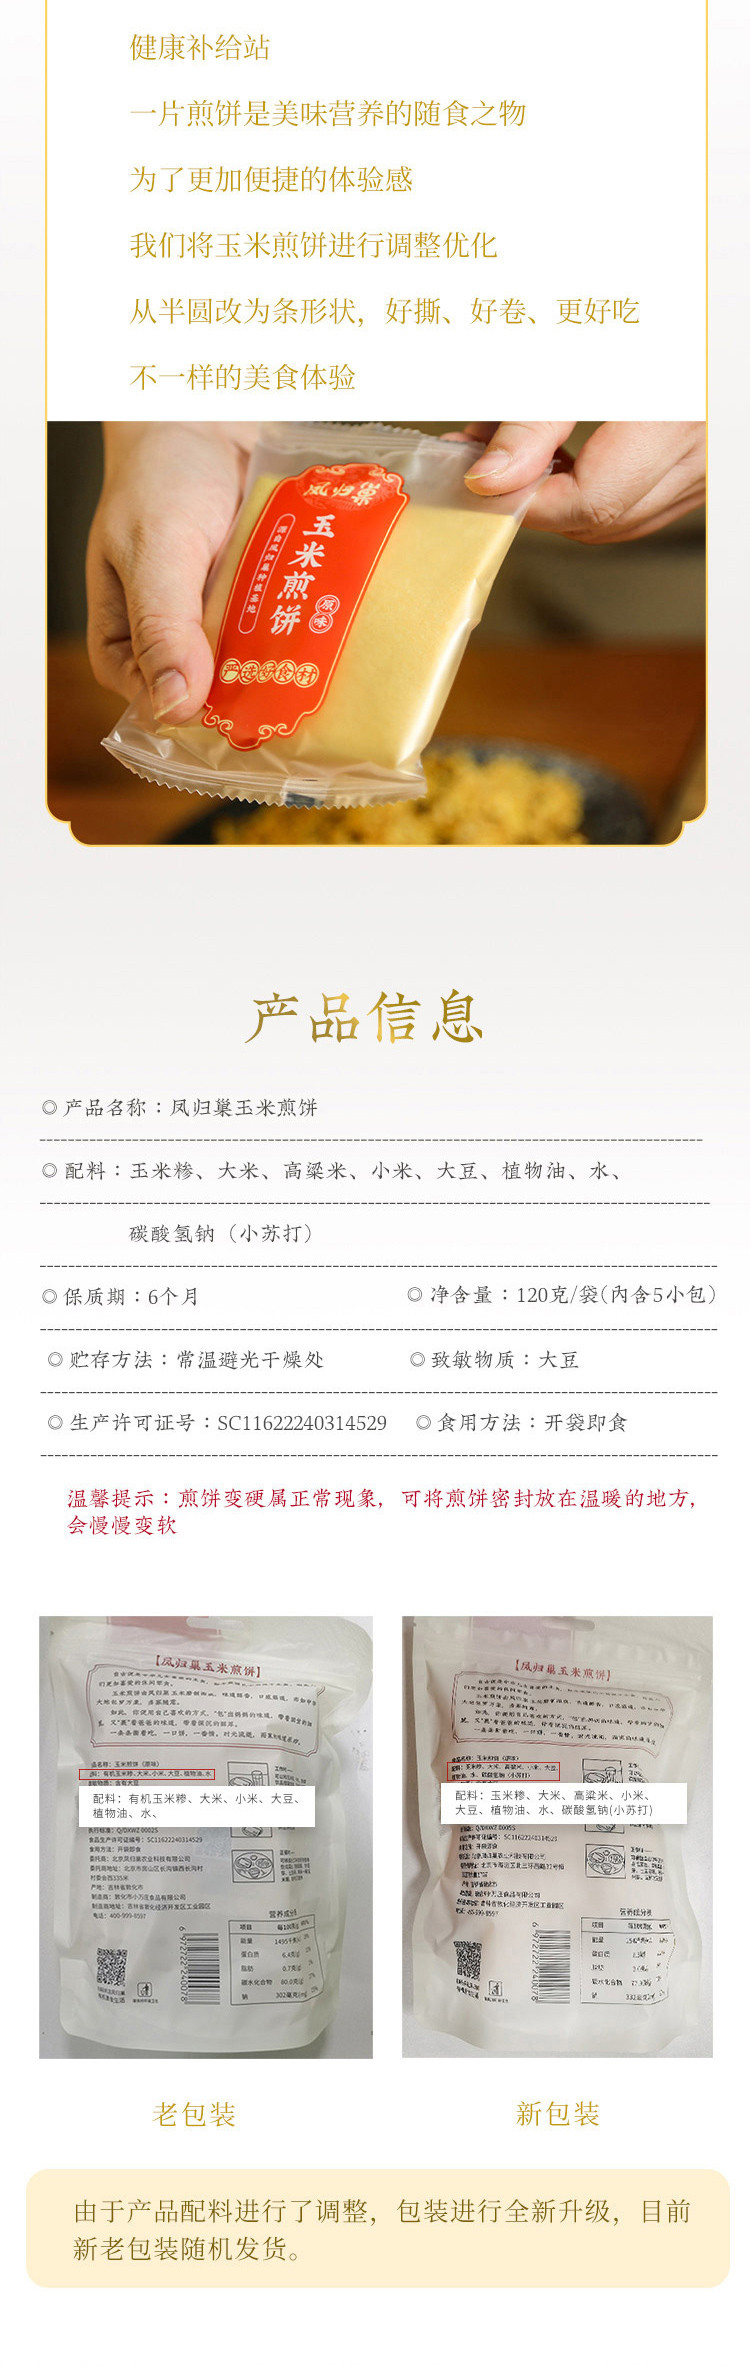 【北京馆】凤归巢 玉米煎饼/原味煎饼 120g/袋*3袋